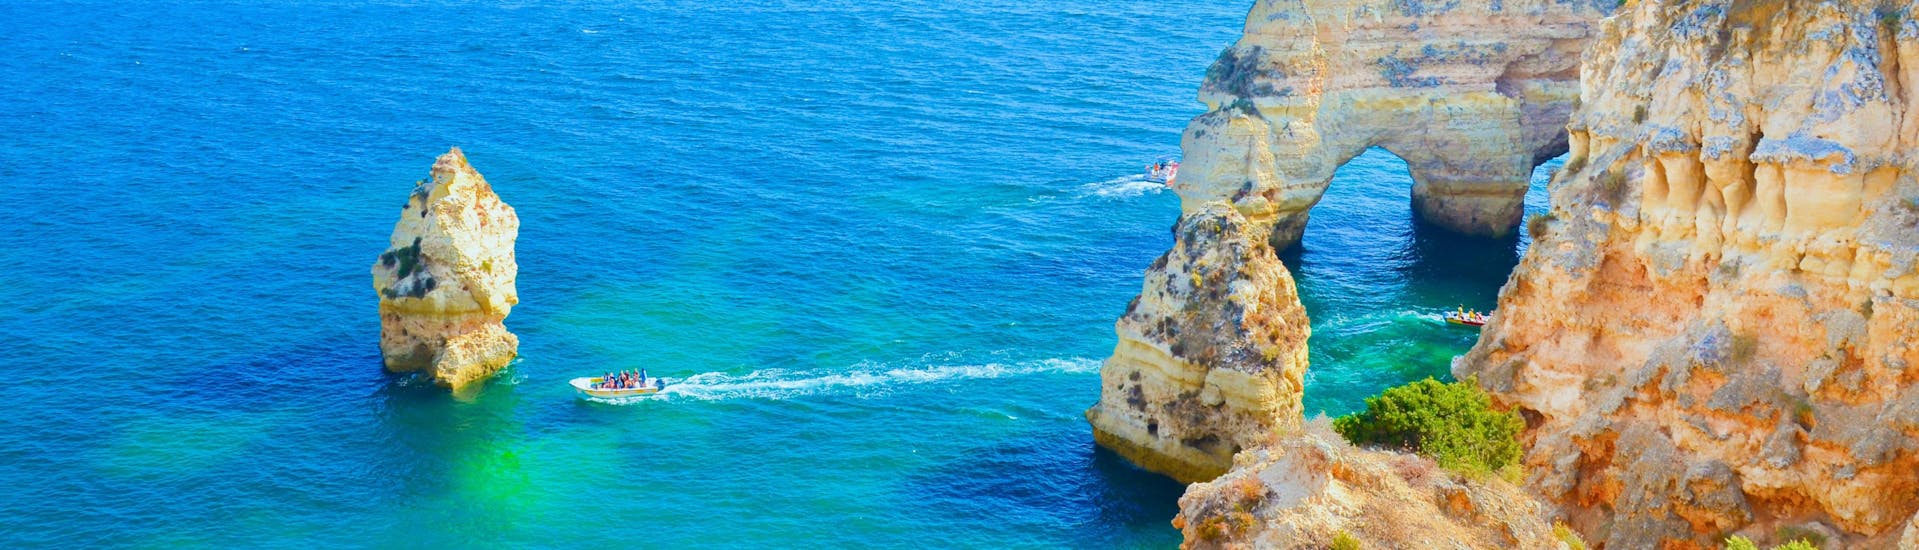 Une image des eaux bleues limpides et des impressionnantes formations rocheuses du littoral de l'Algarve que les visiteurs peuvent admirer lors d'une sortie en bateau depuis Lagos.